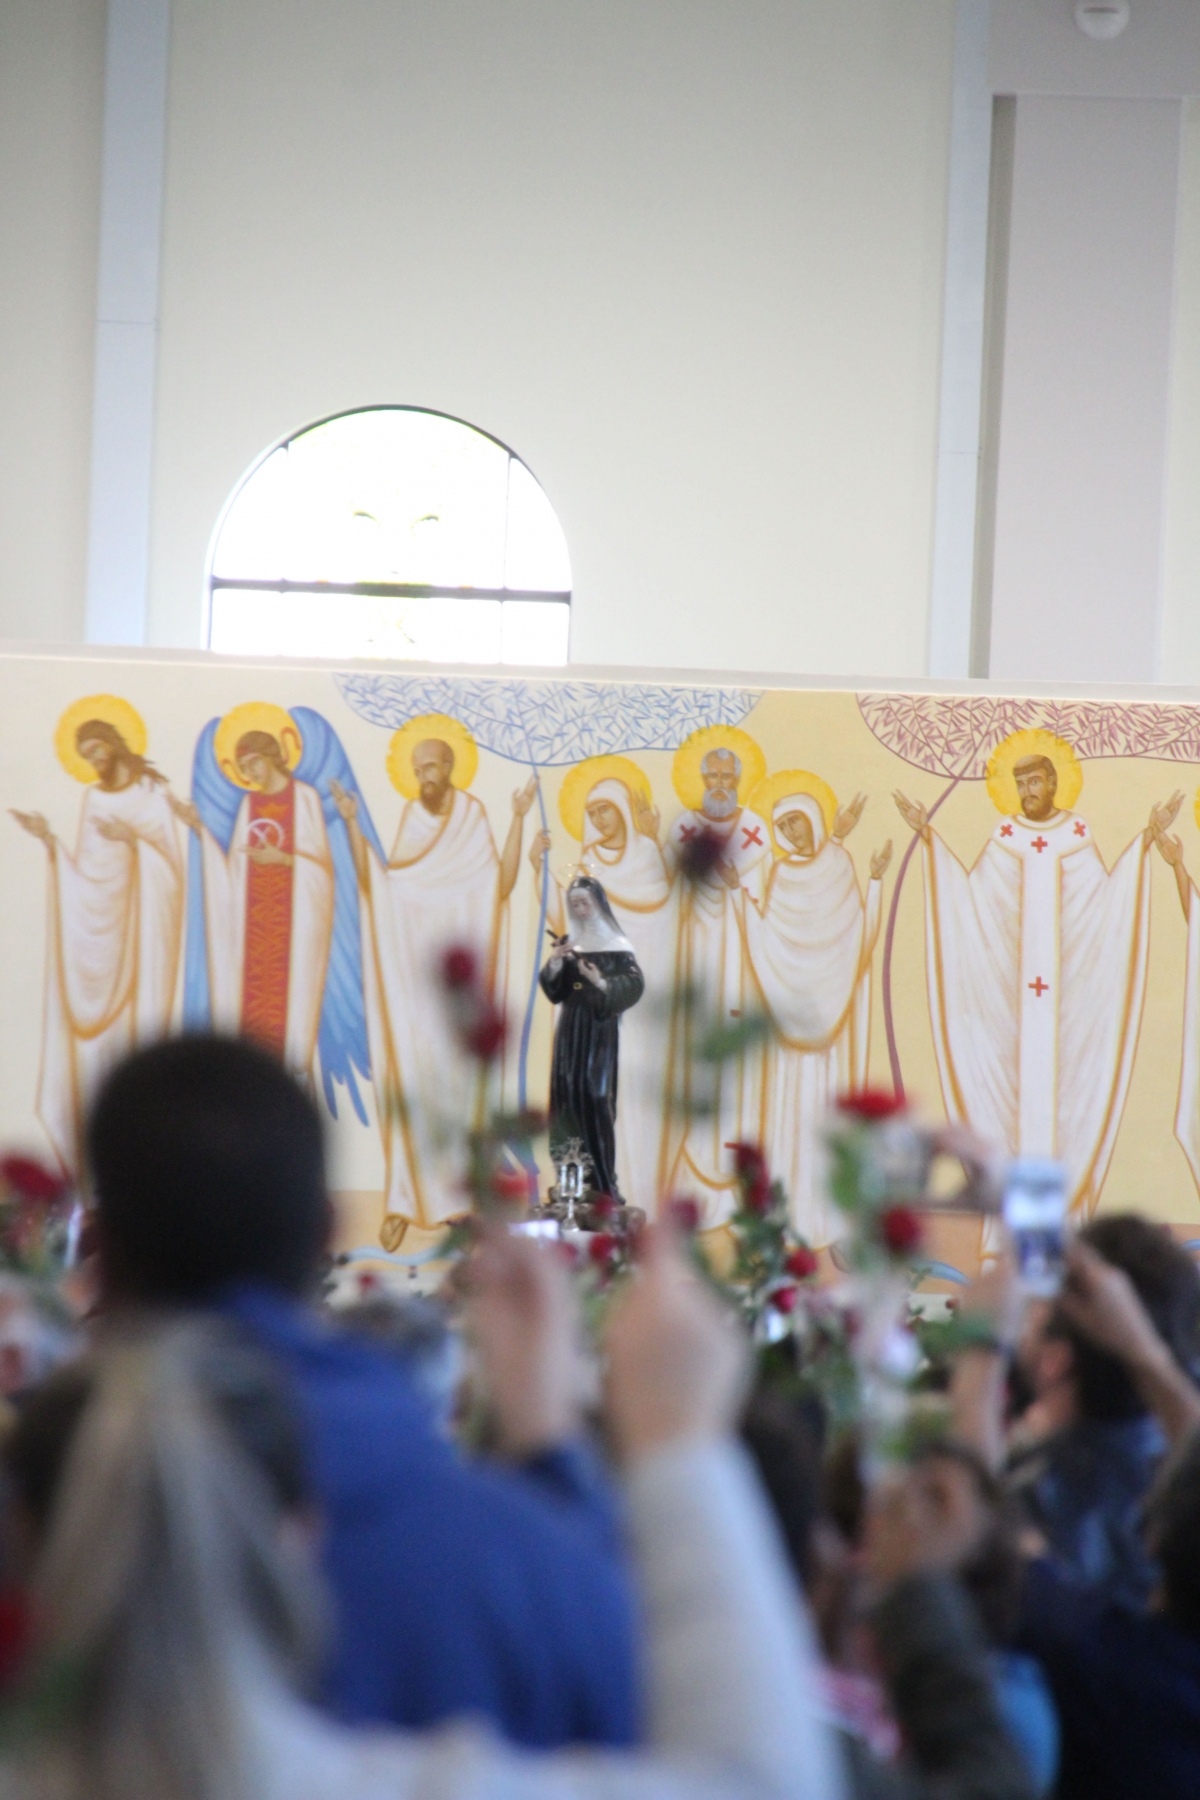 Qualitas Fornece Ventiladores Turbos ao Maior Santuário Mundial Dedicado à Santa Rita de Cássia